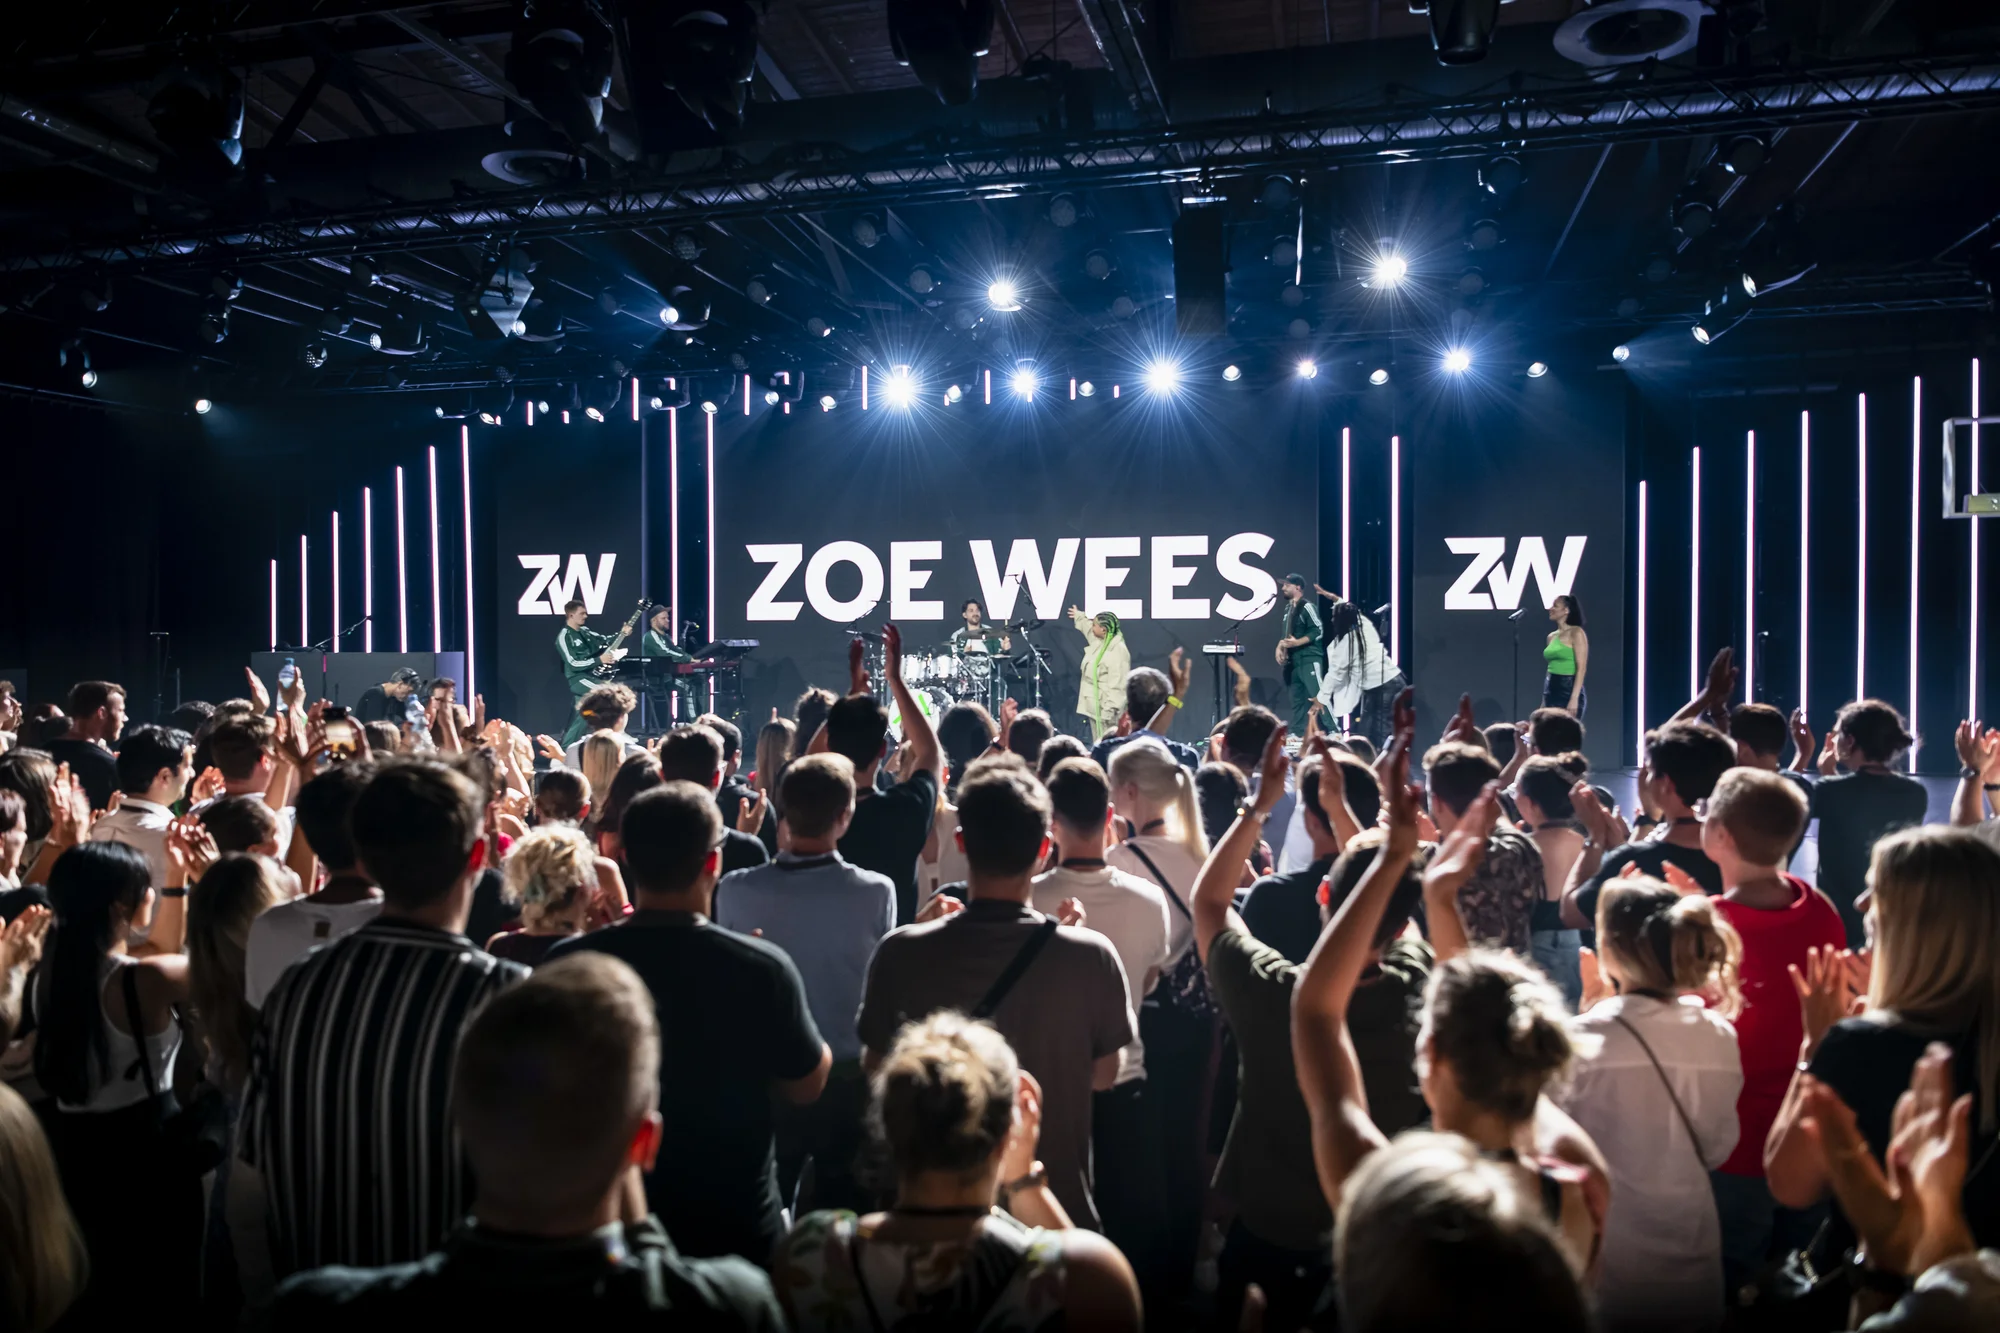 Eine große Traube Menschen steht vor einer Bühne. Im Hintergrund steht der Schriftzug "Zoe Wees".